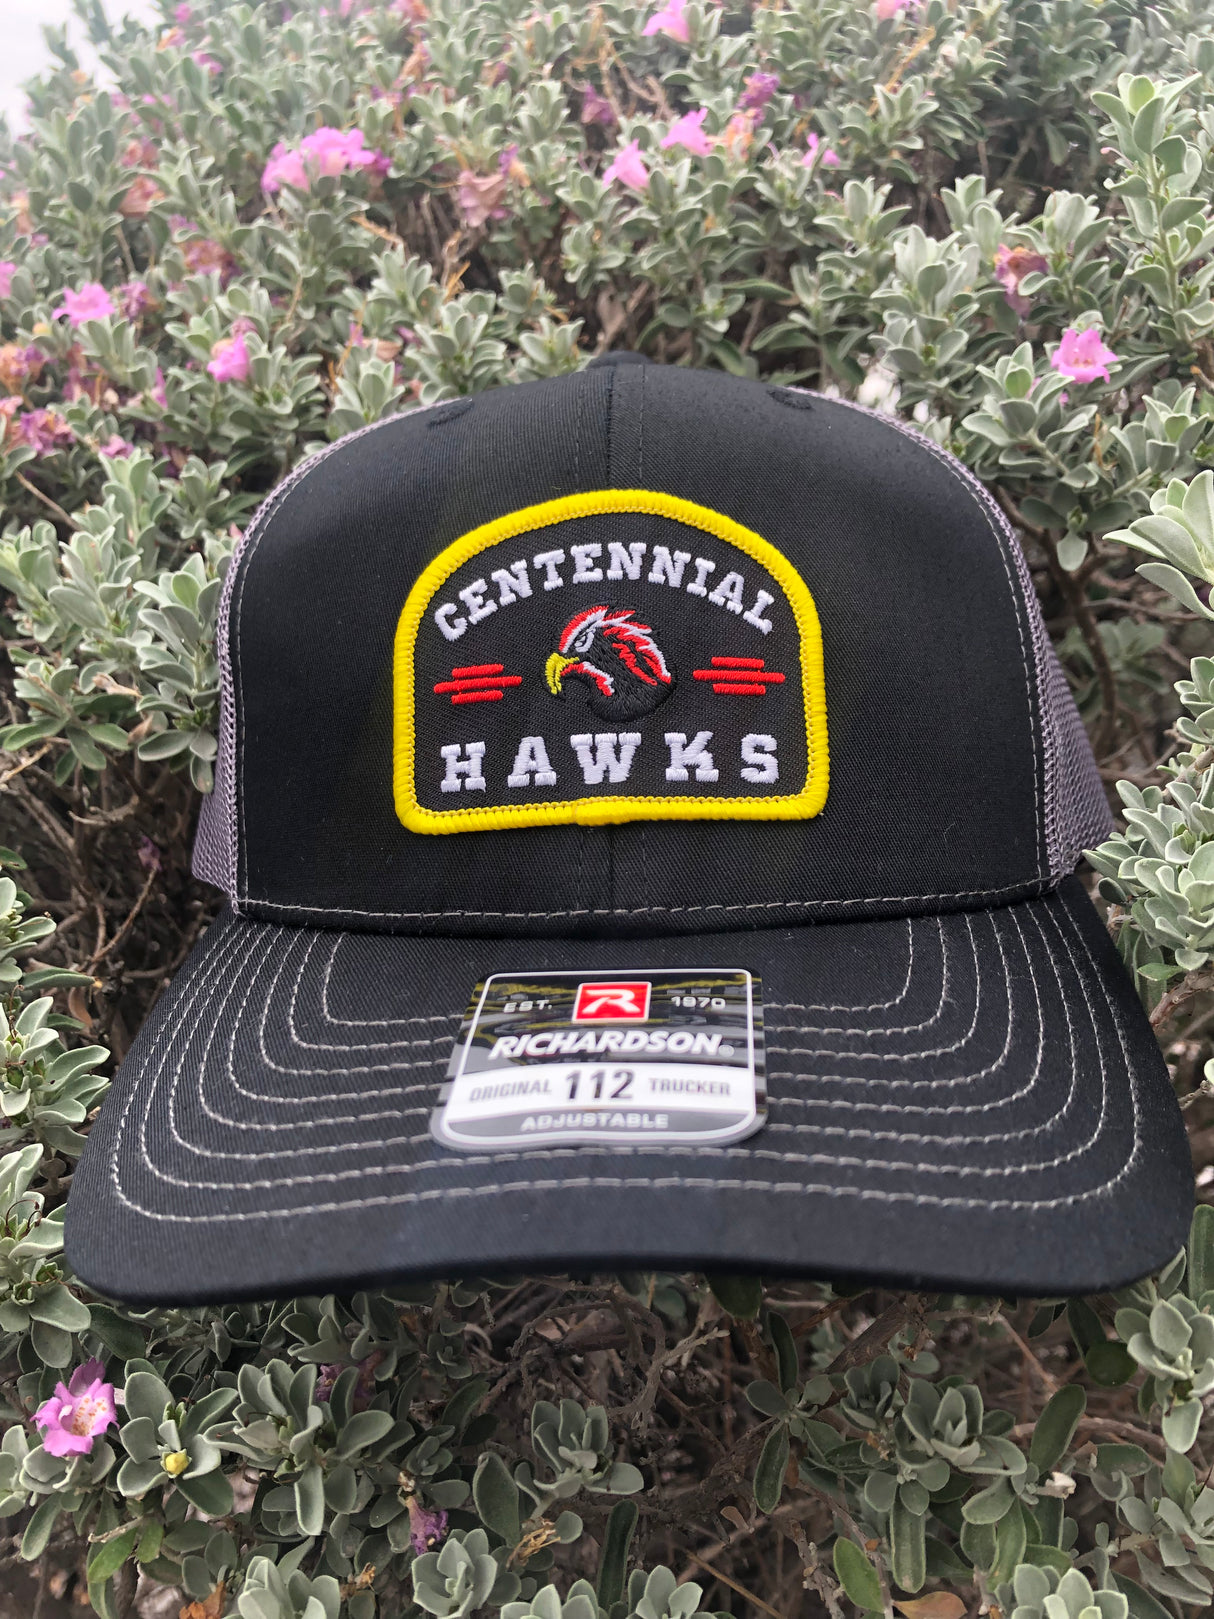 Centennial Hawks Trucker Cap